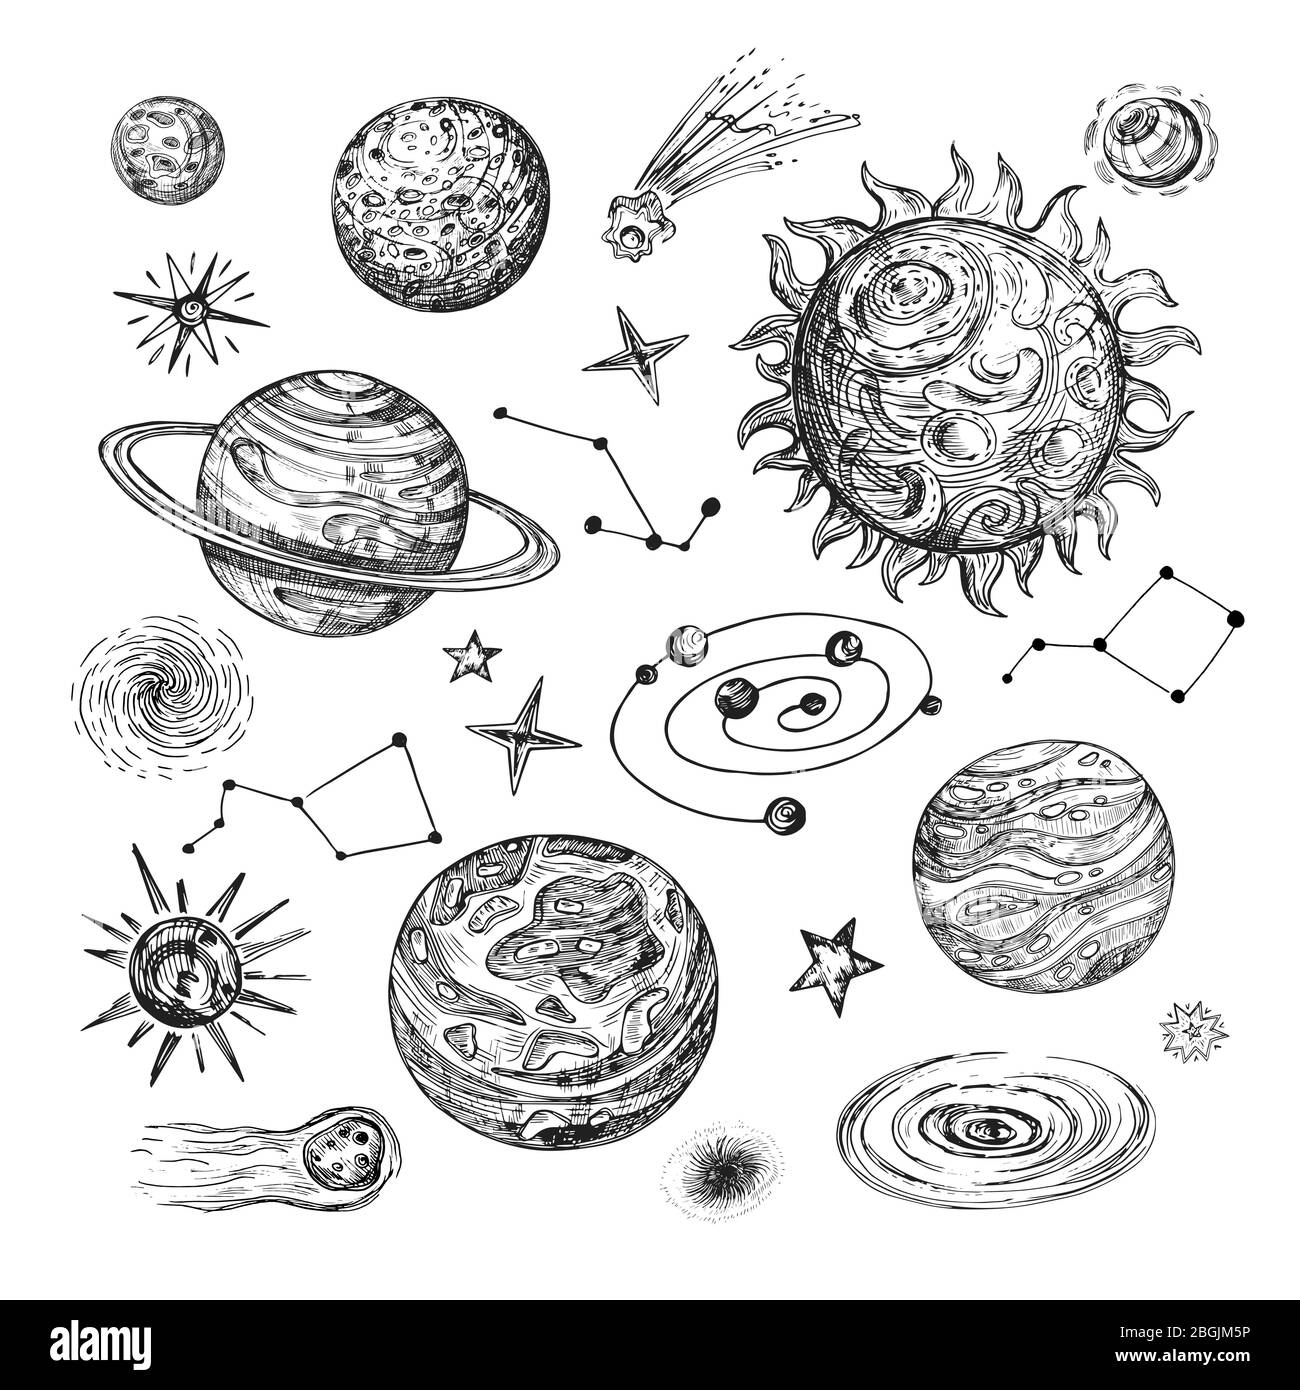 Handgezeichnete Sonne, Planeten, Sterne, Komet, Asteroid, Galaxie. Vintage astronomische Vektor-Illustration im Gravurstil. Planet und Komet, Mond und Sonne, Galaxie und Asteroid Stock Vektor